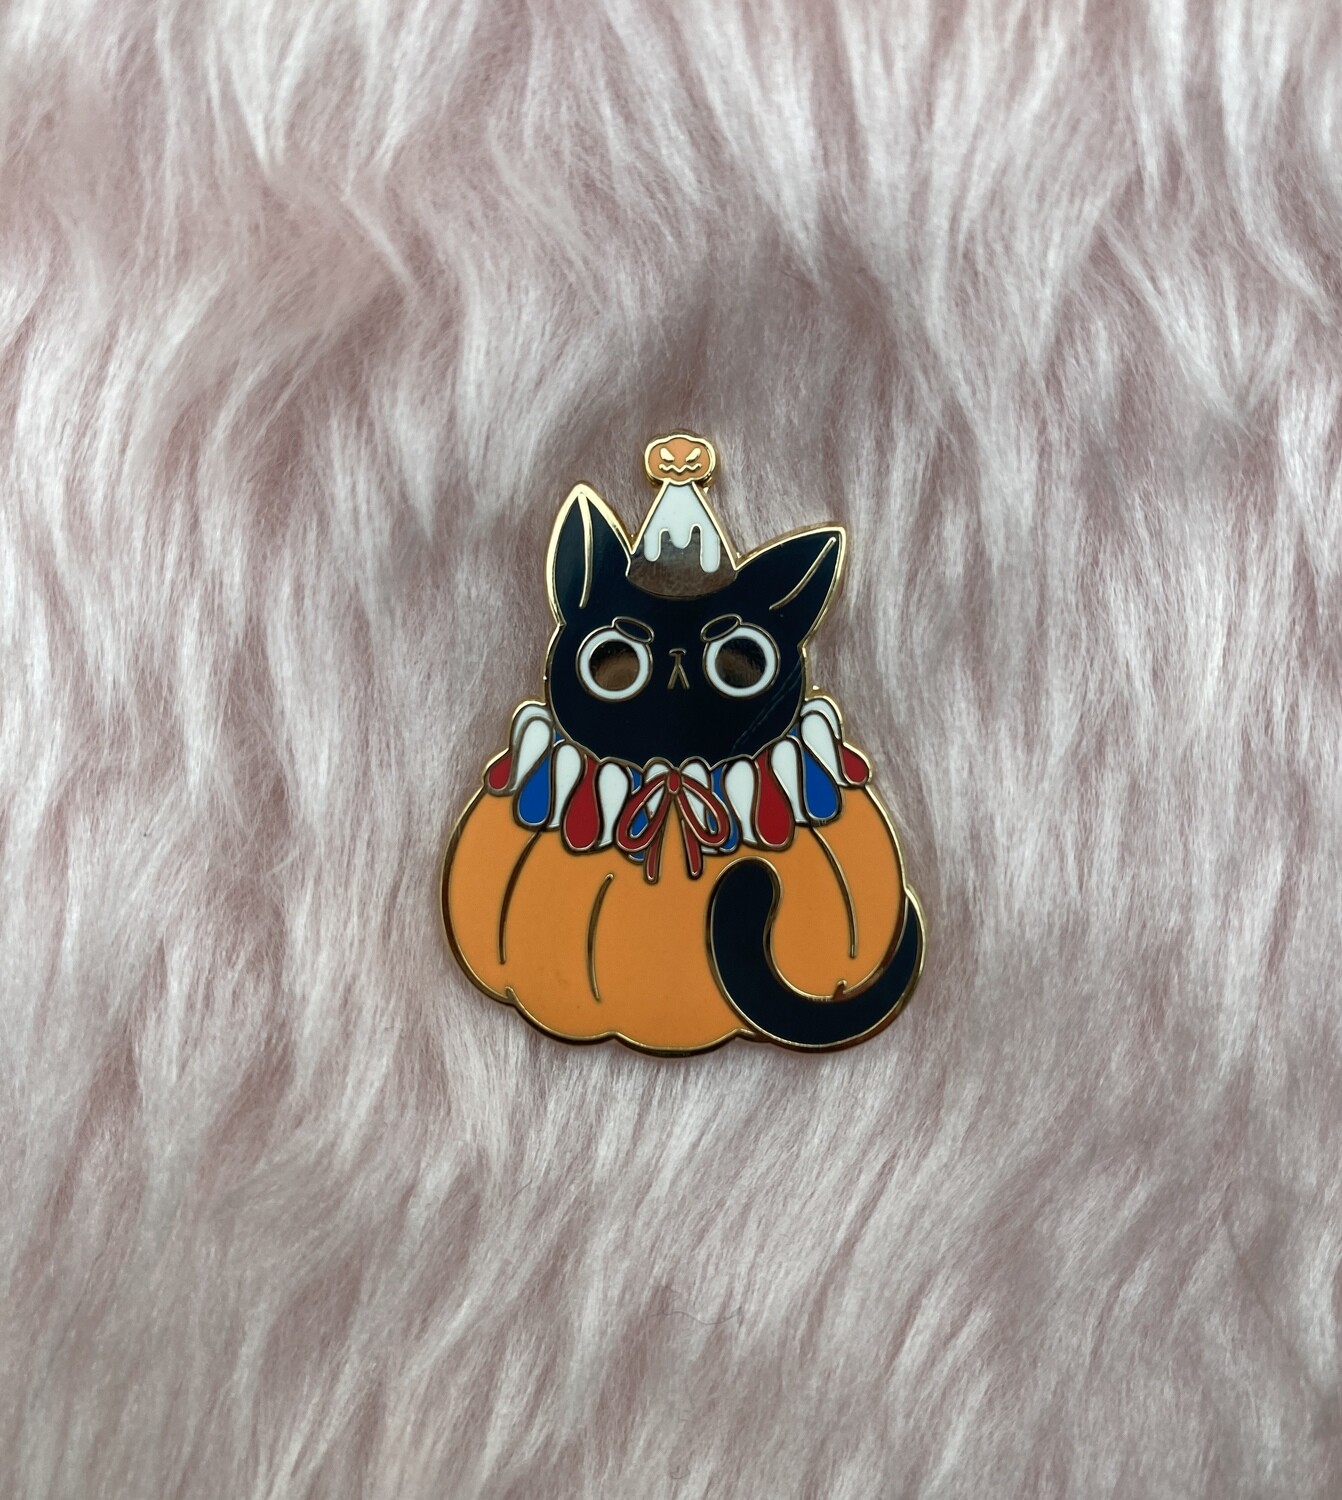 Angry Kitty pin